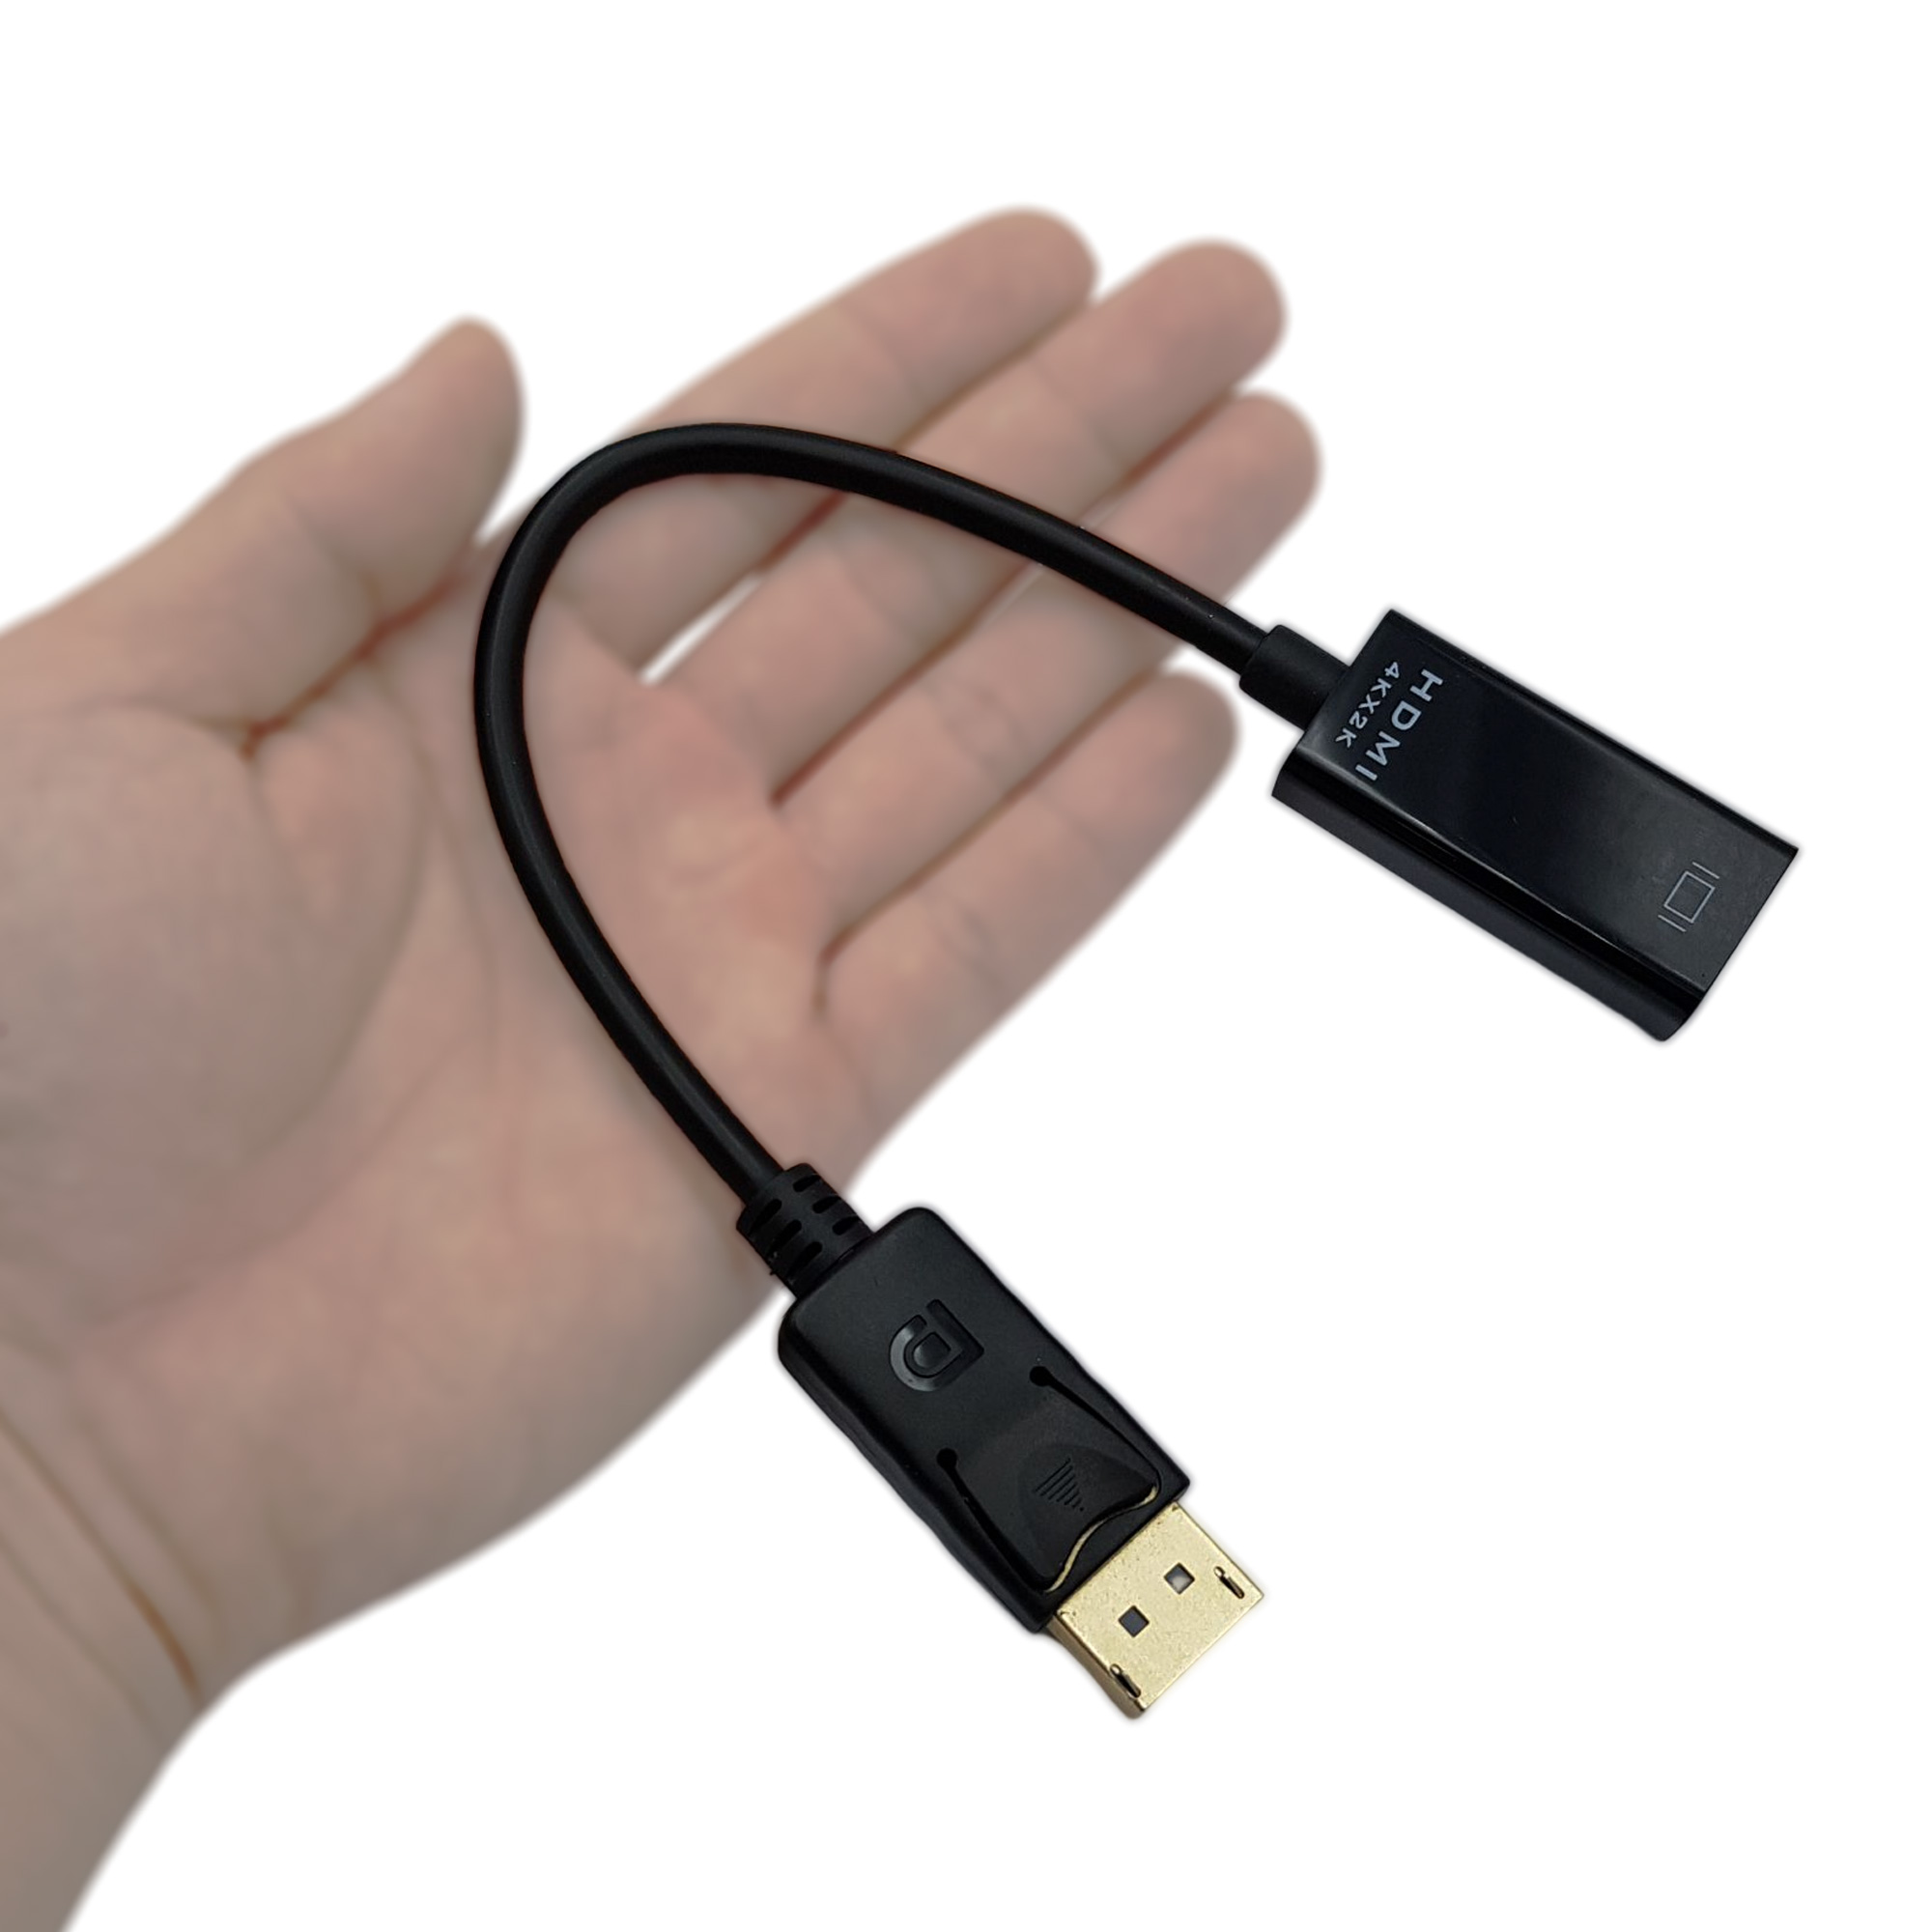 Cáp chuyển DisplayPort sang HDMI 20cm